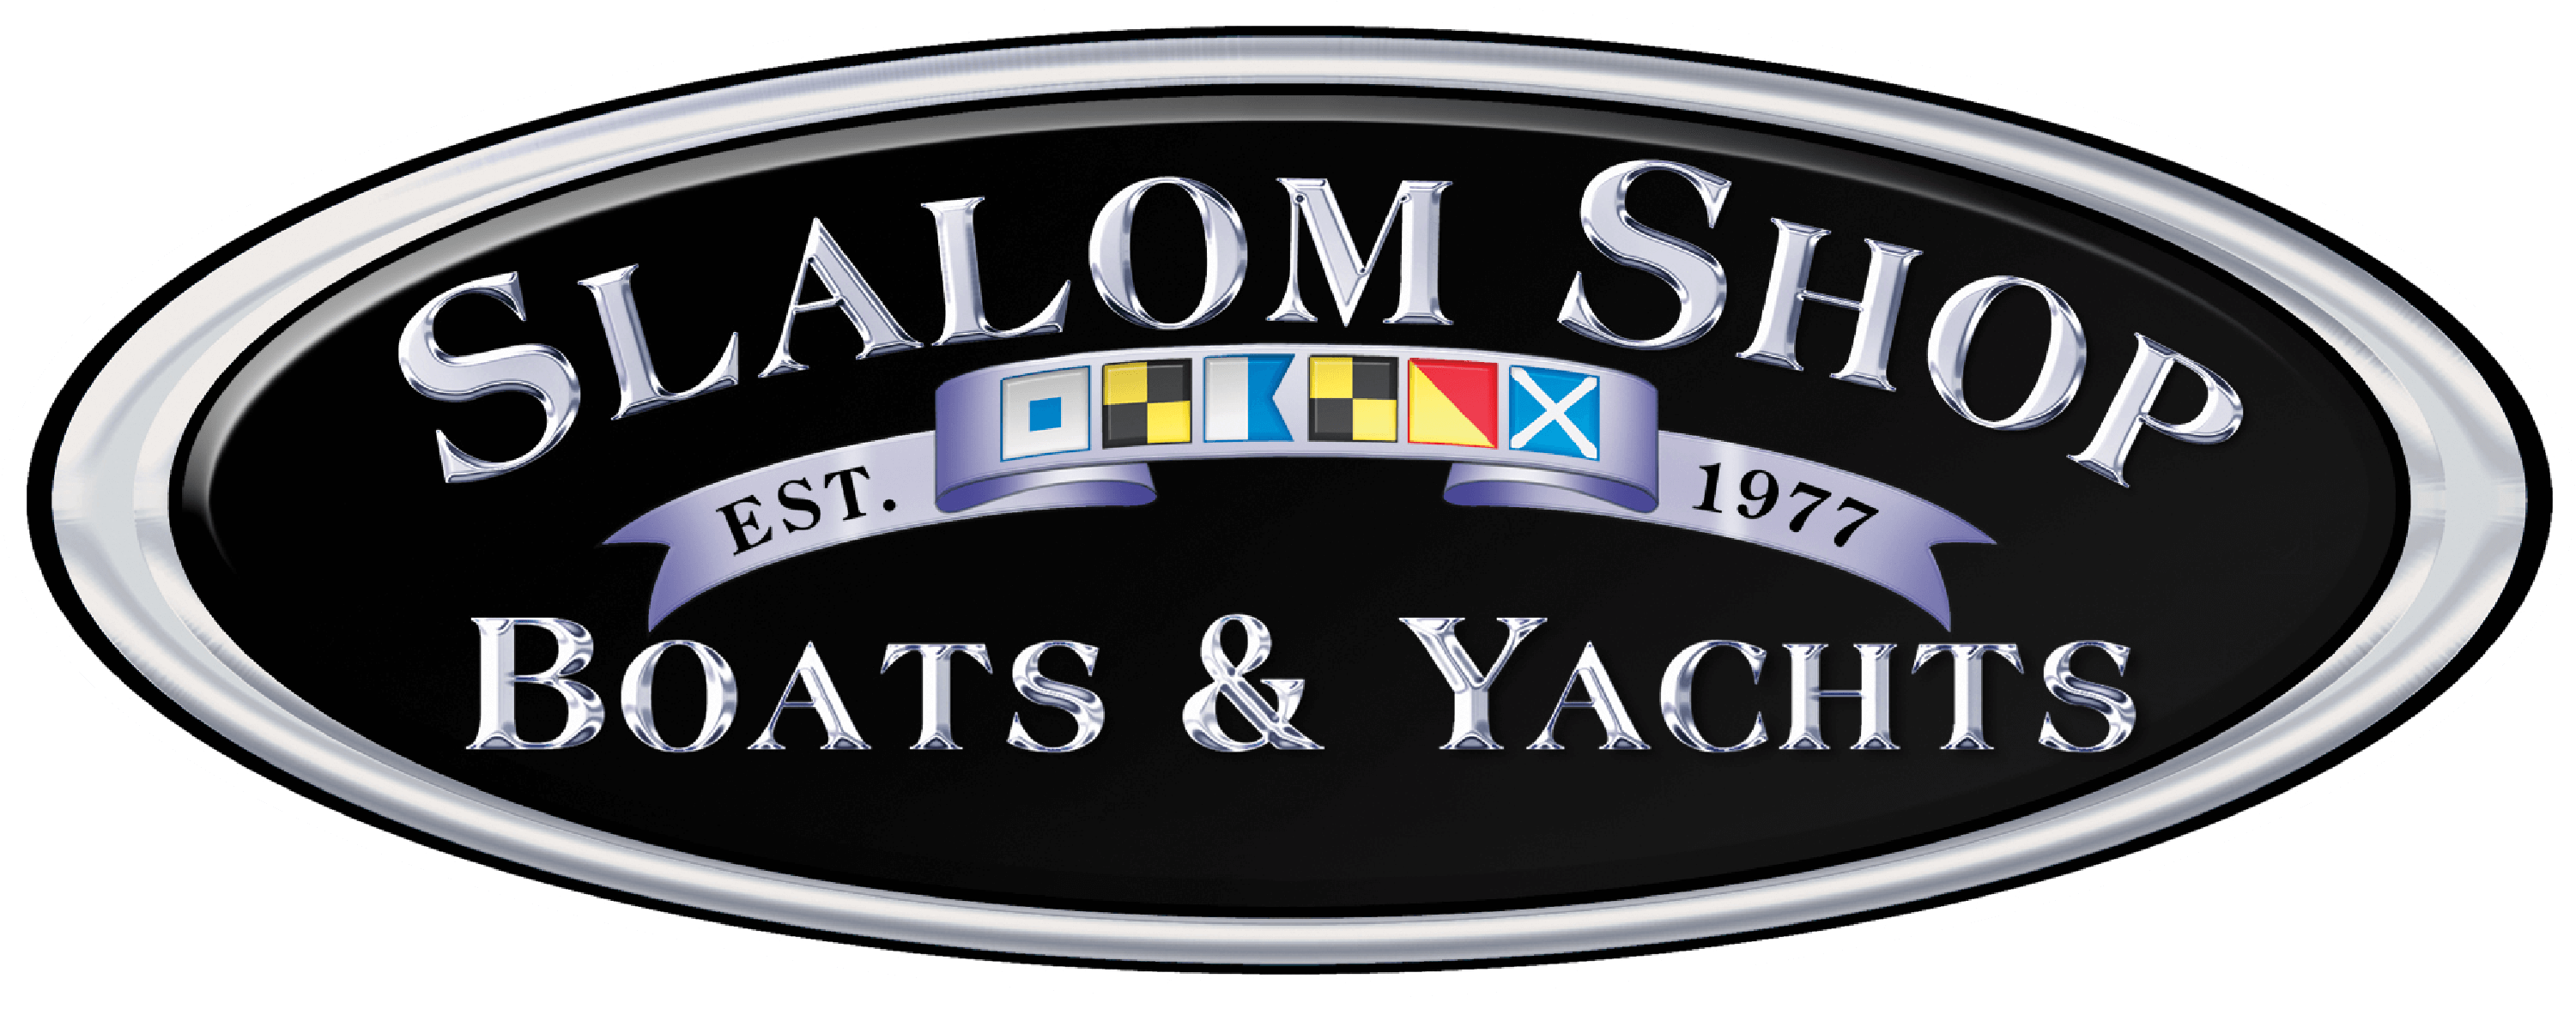 slalom shop boats & yachts reviews